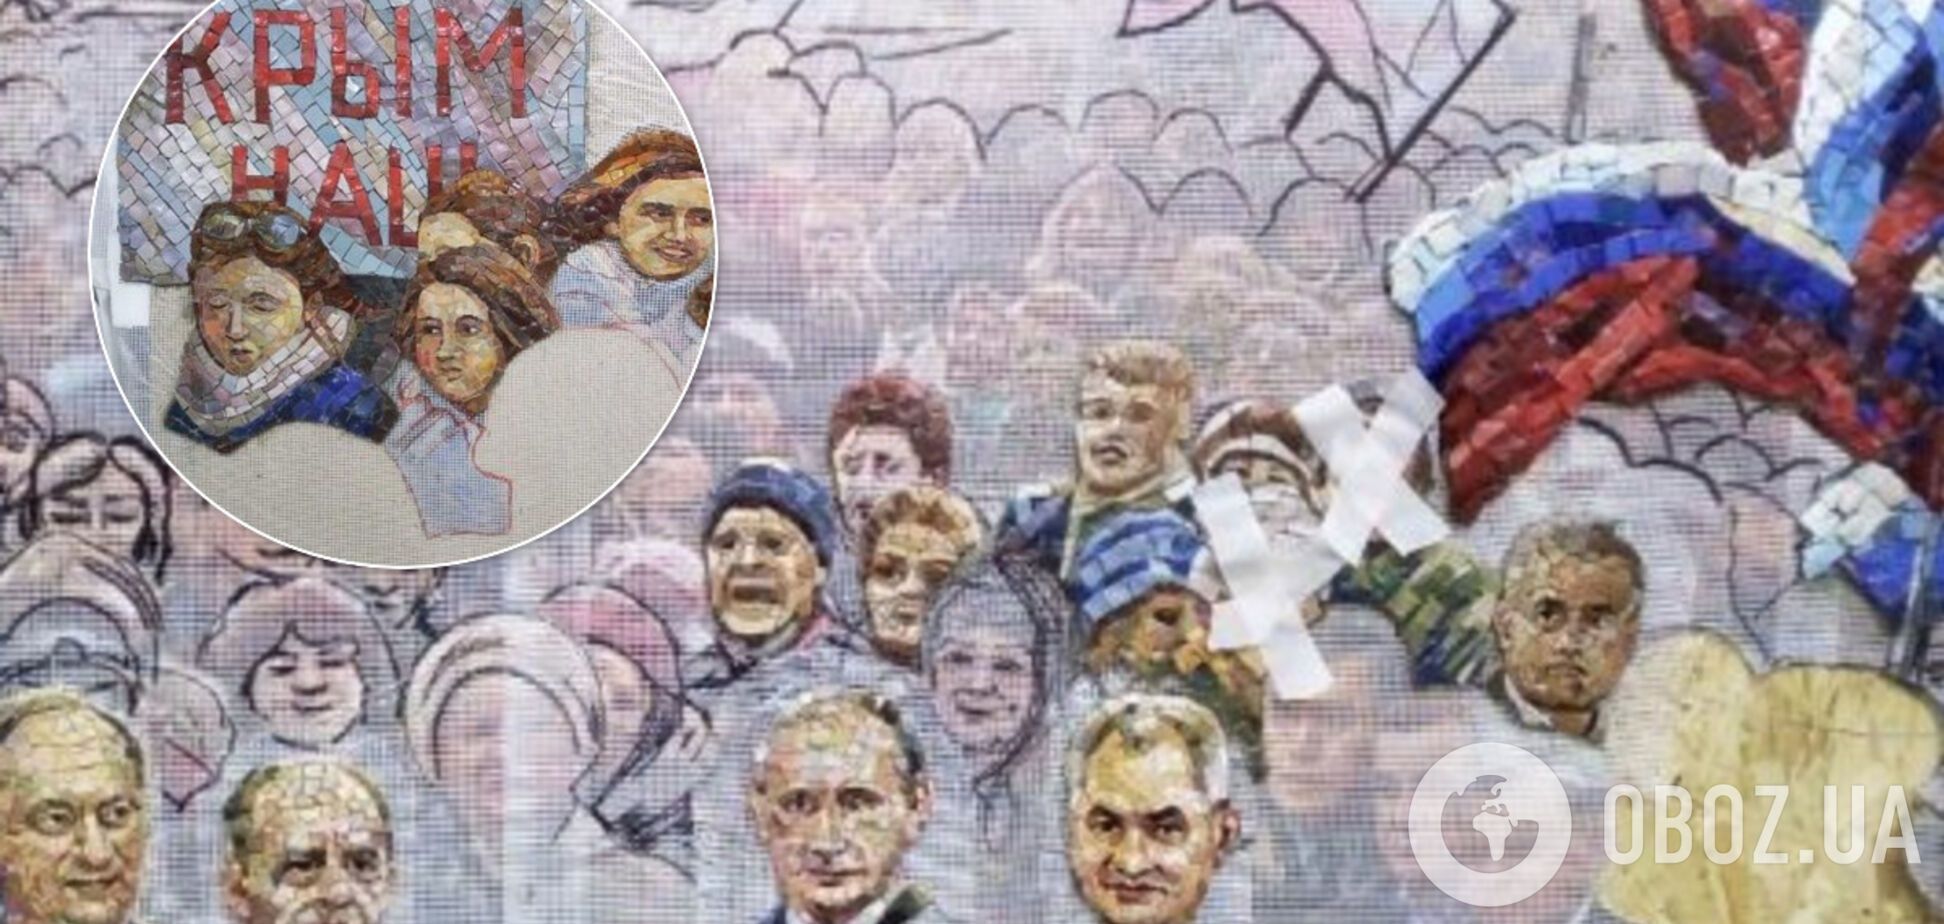 Путина вместе со Сталиным изобразят на стенах храма. Фото скандальной мозаики